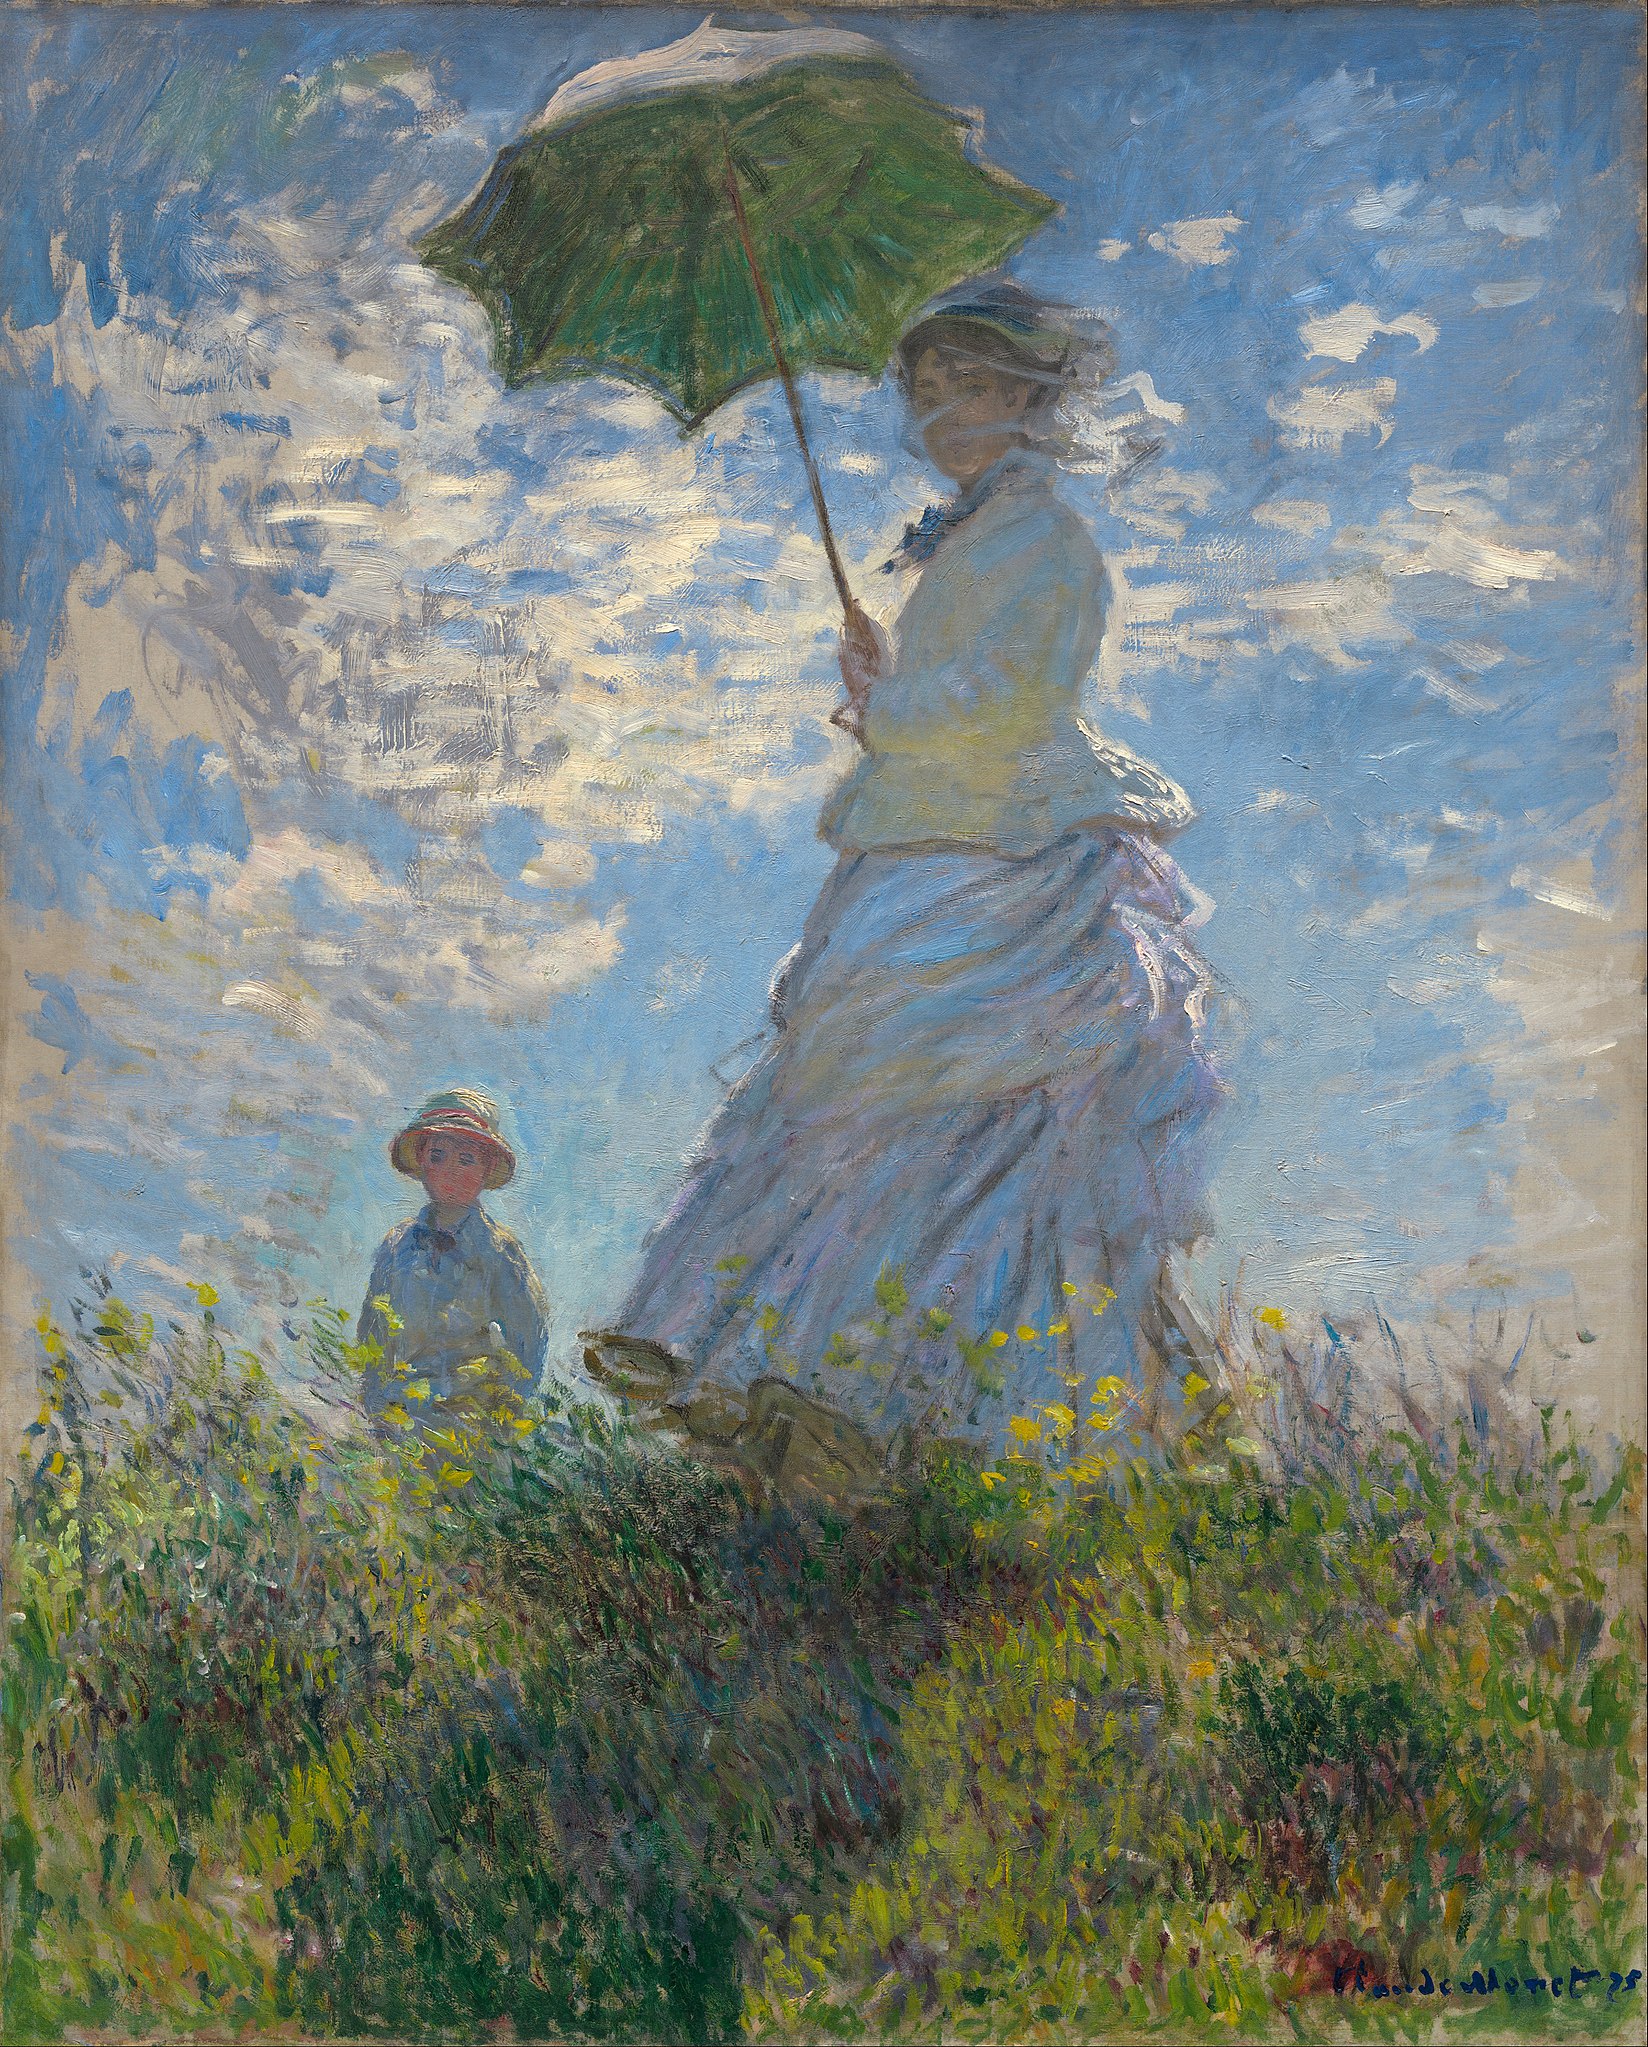 撑阳伞的女人 by 克劳德· 莫奈 - 1875年 - 100 × 81厘米 